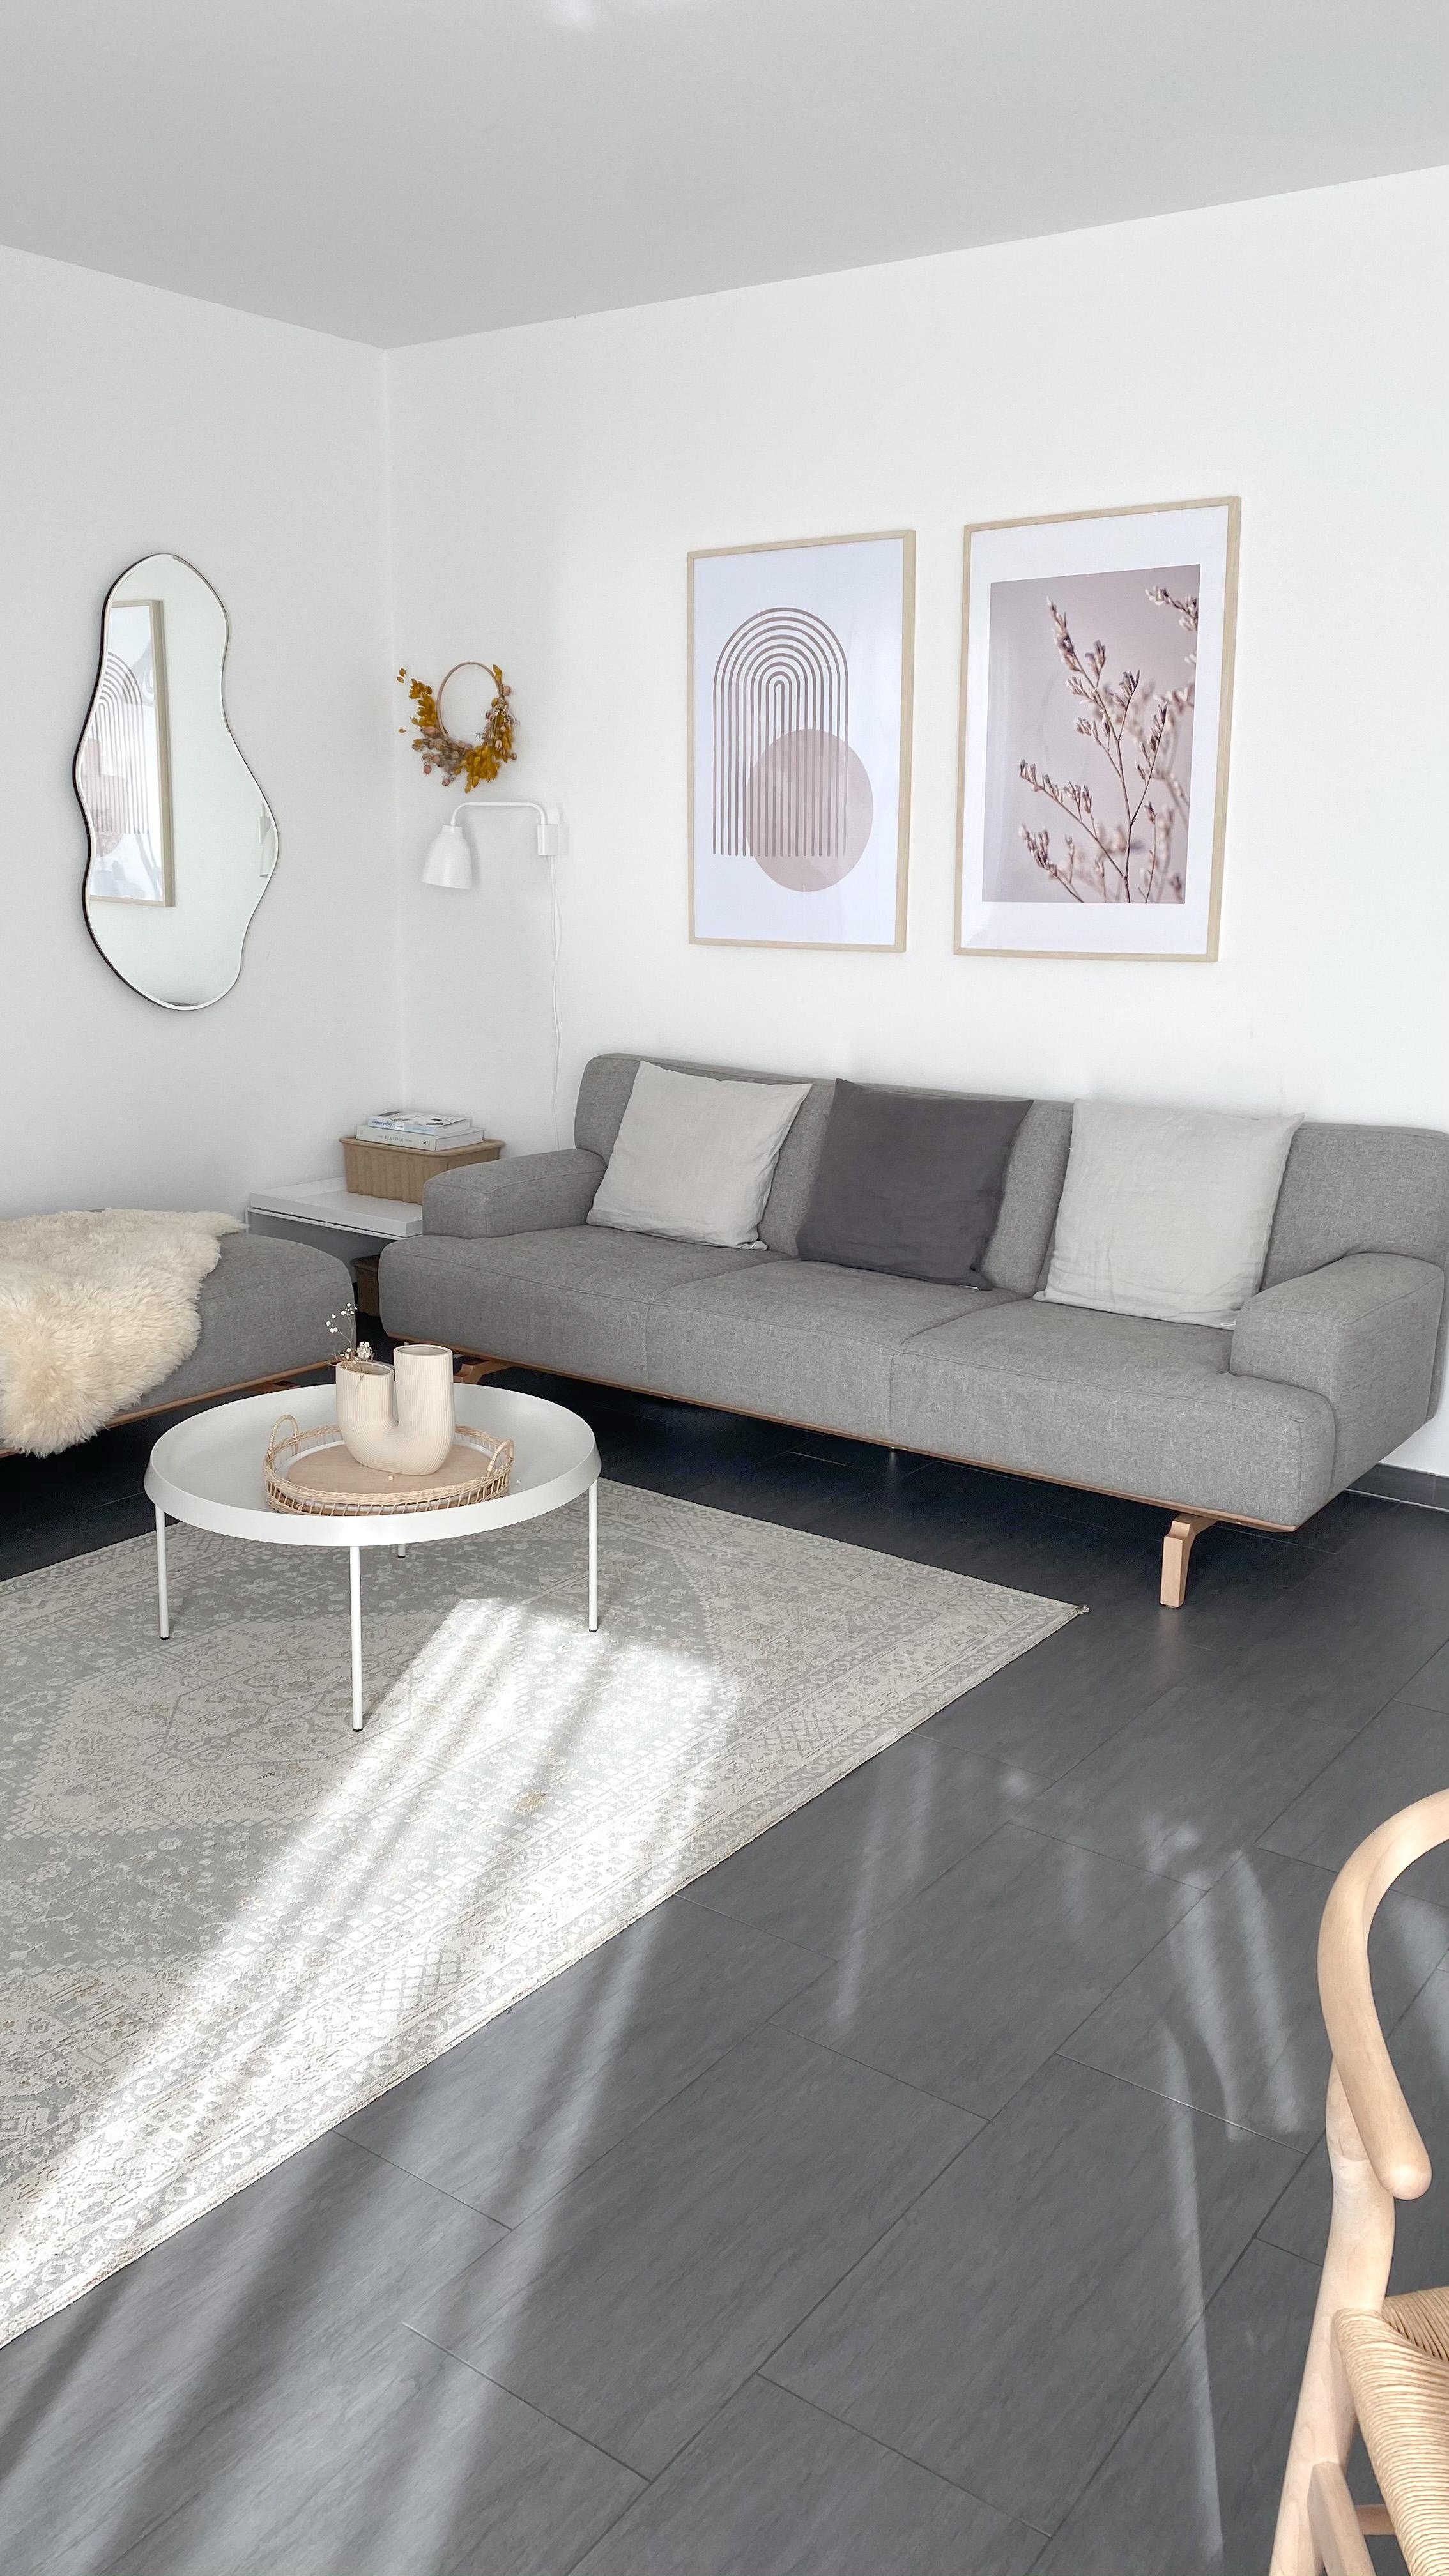 Neue #bilderwand im #wohnzimmer. Sieht doch gleich nach #frühling aus!
#couchstyle #couch #freshcolours